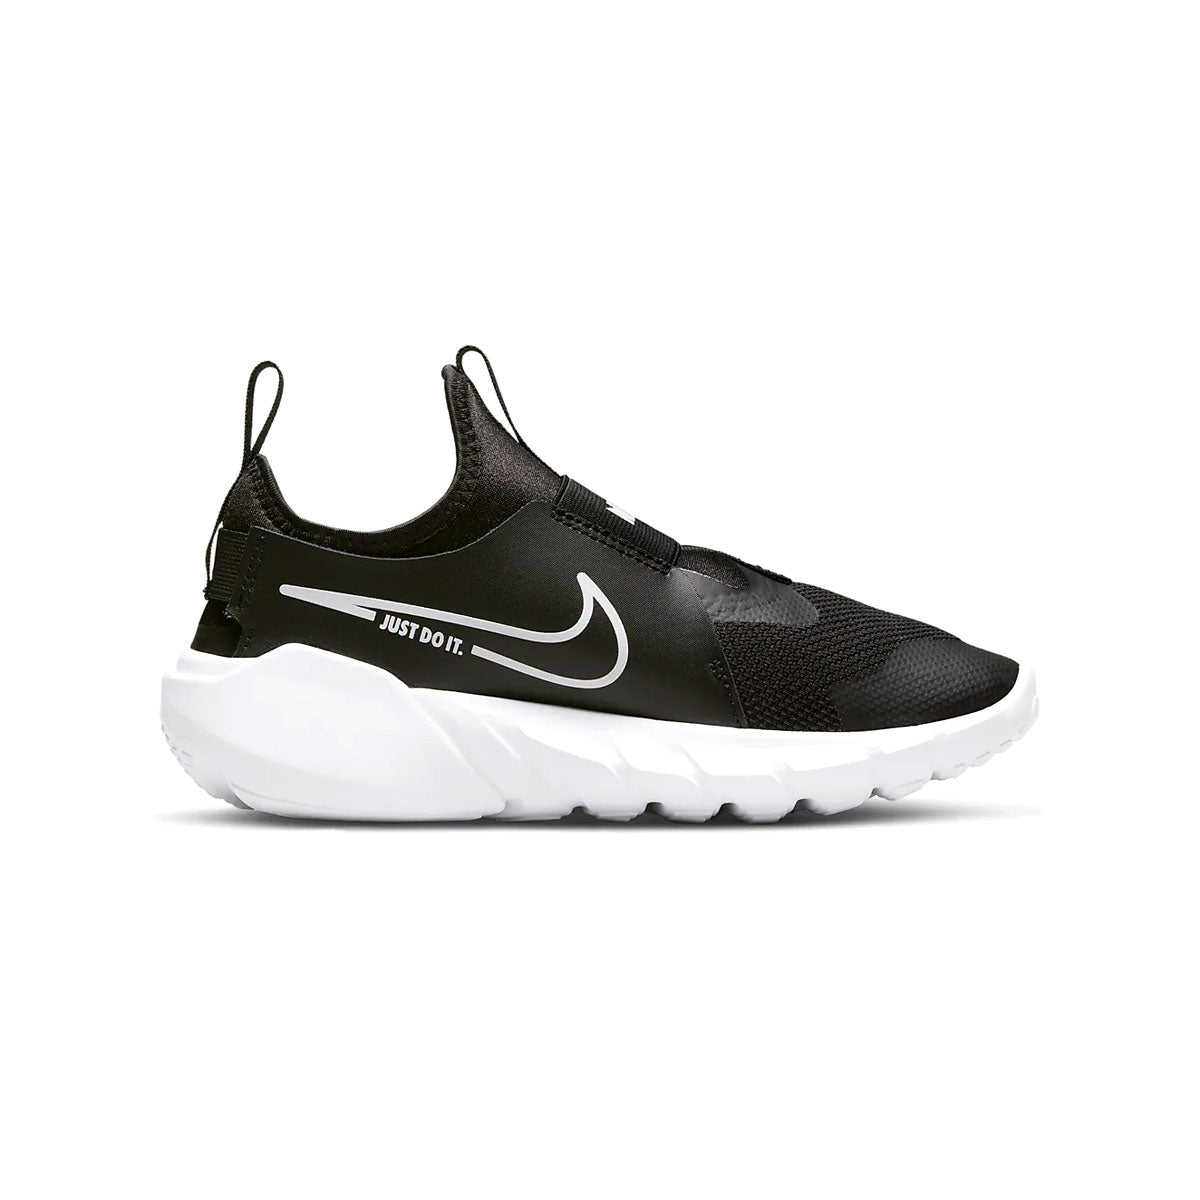 Nike Boy's GS Flex Runner 2 Road Running Shoes